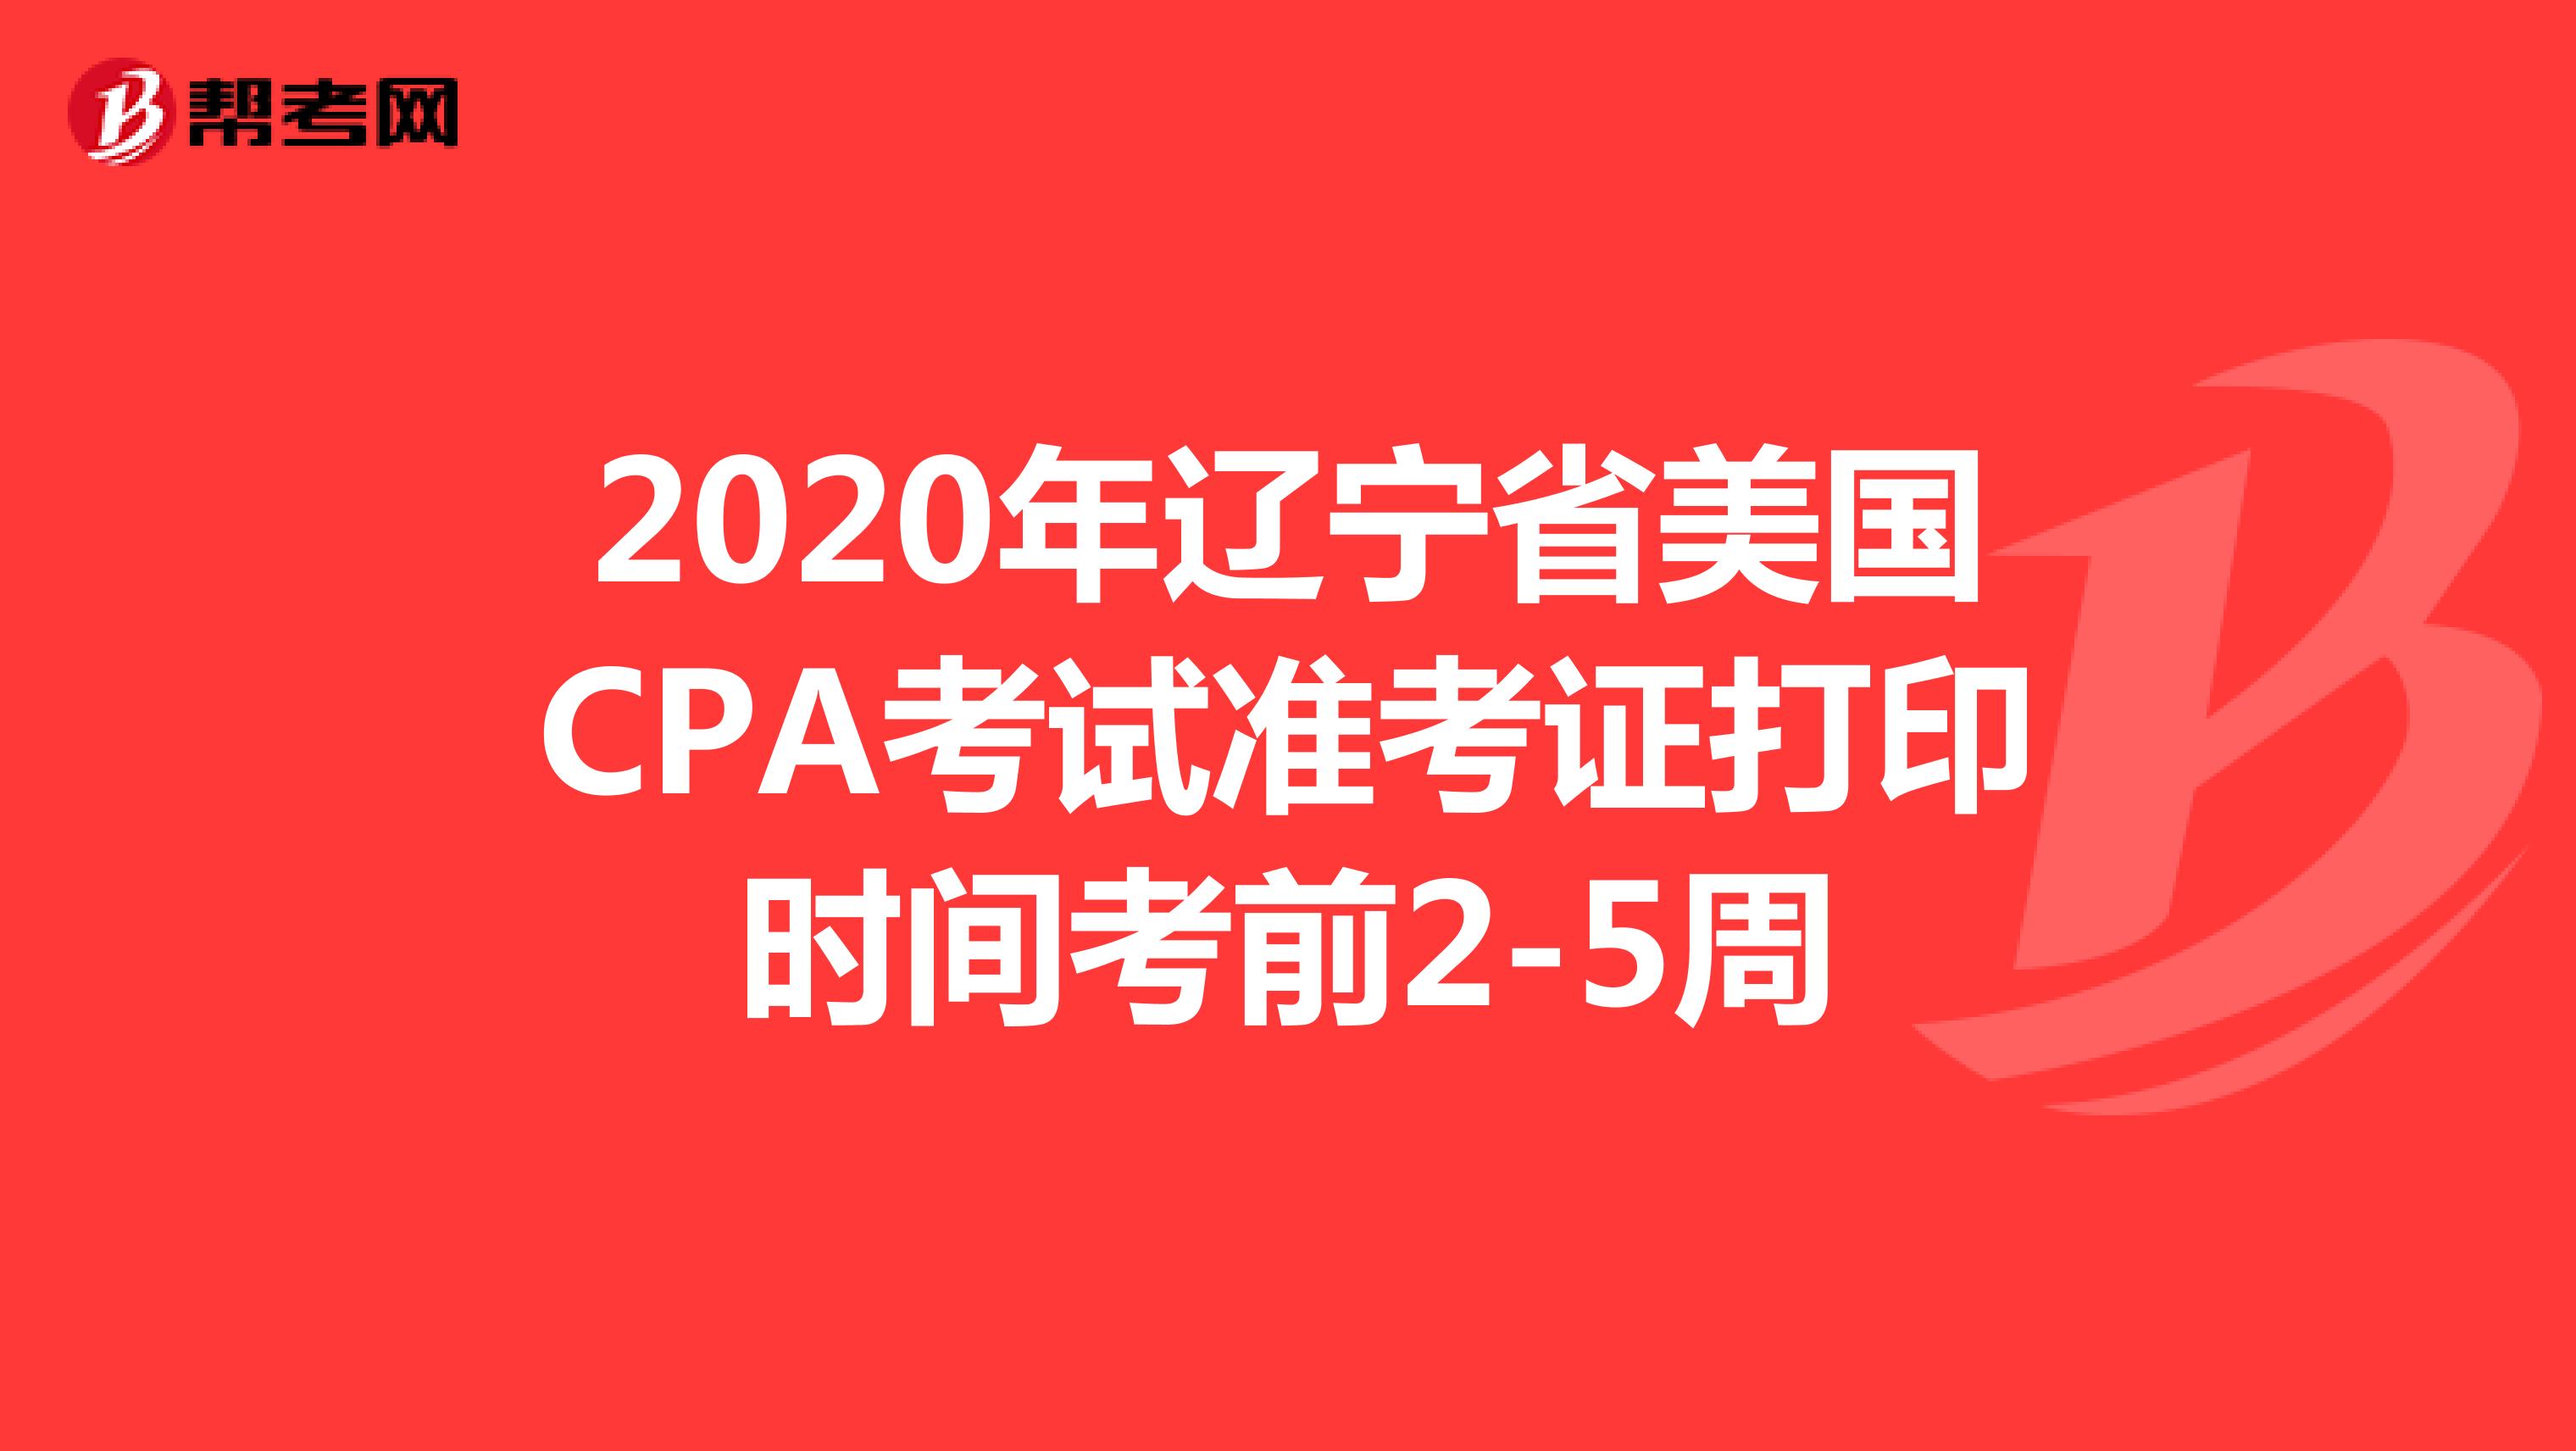 2020年辽宁省美国CPA考试准考证打印时间考前2-5周